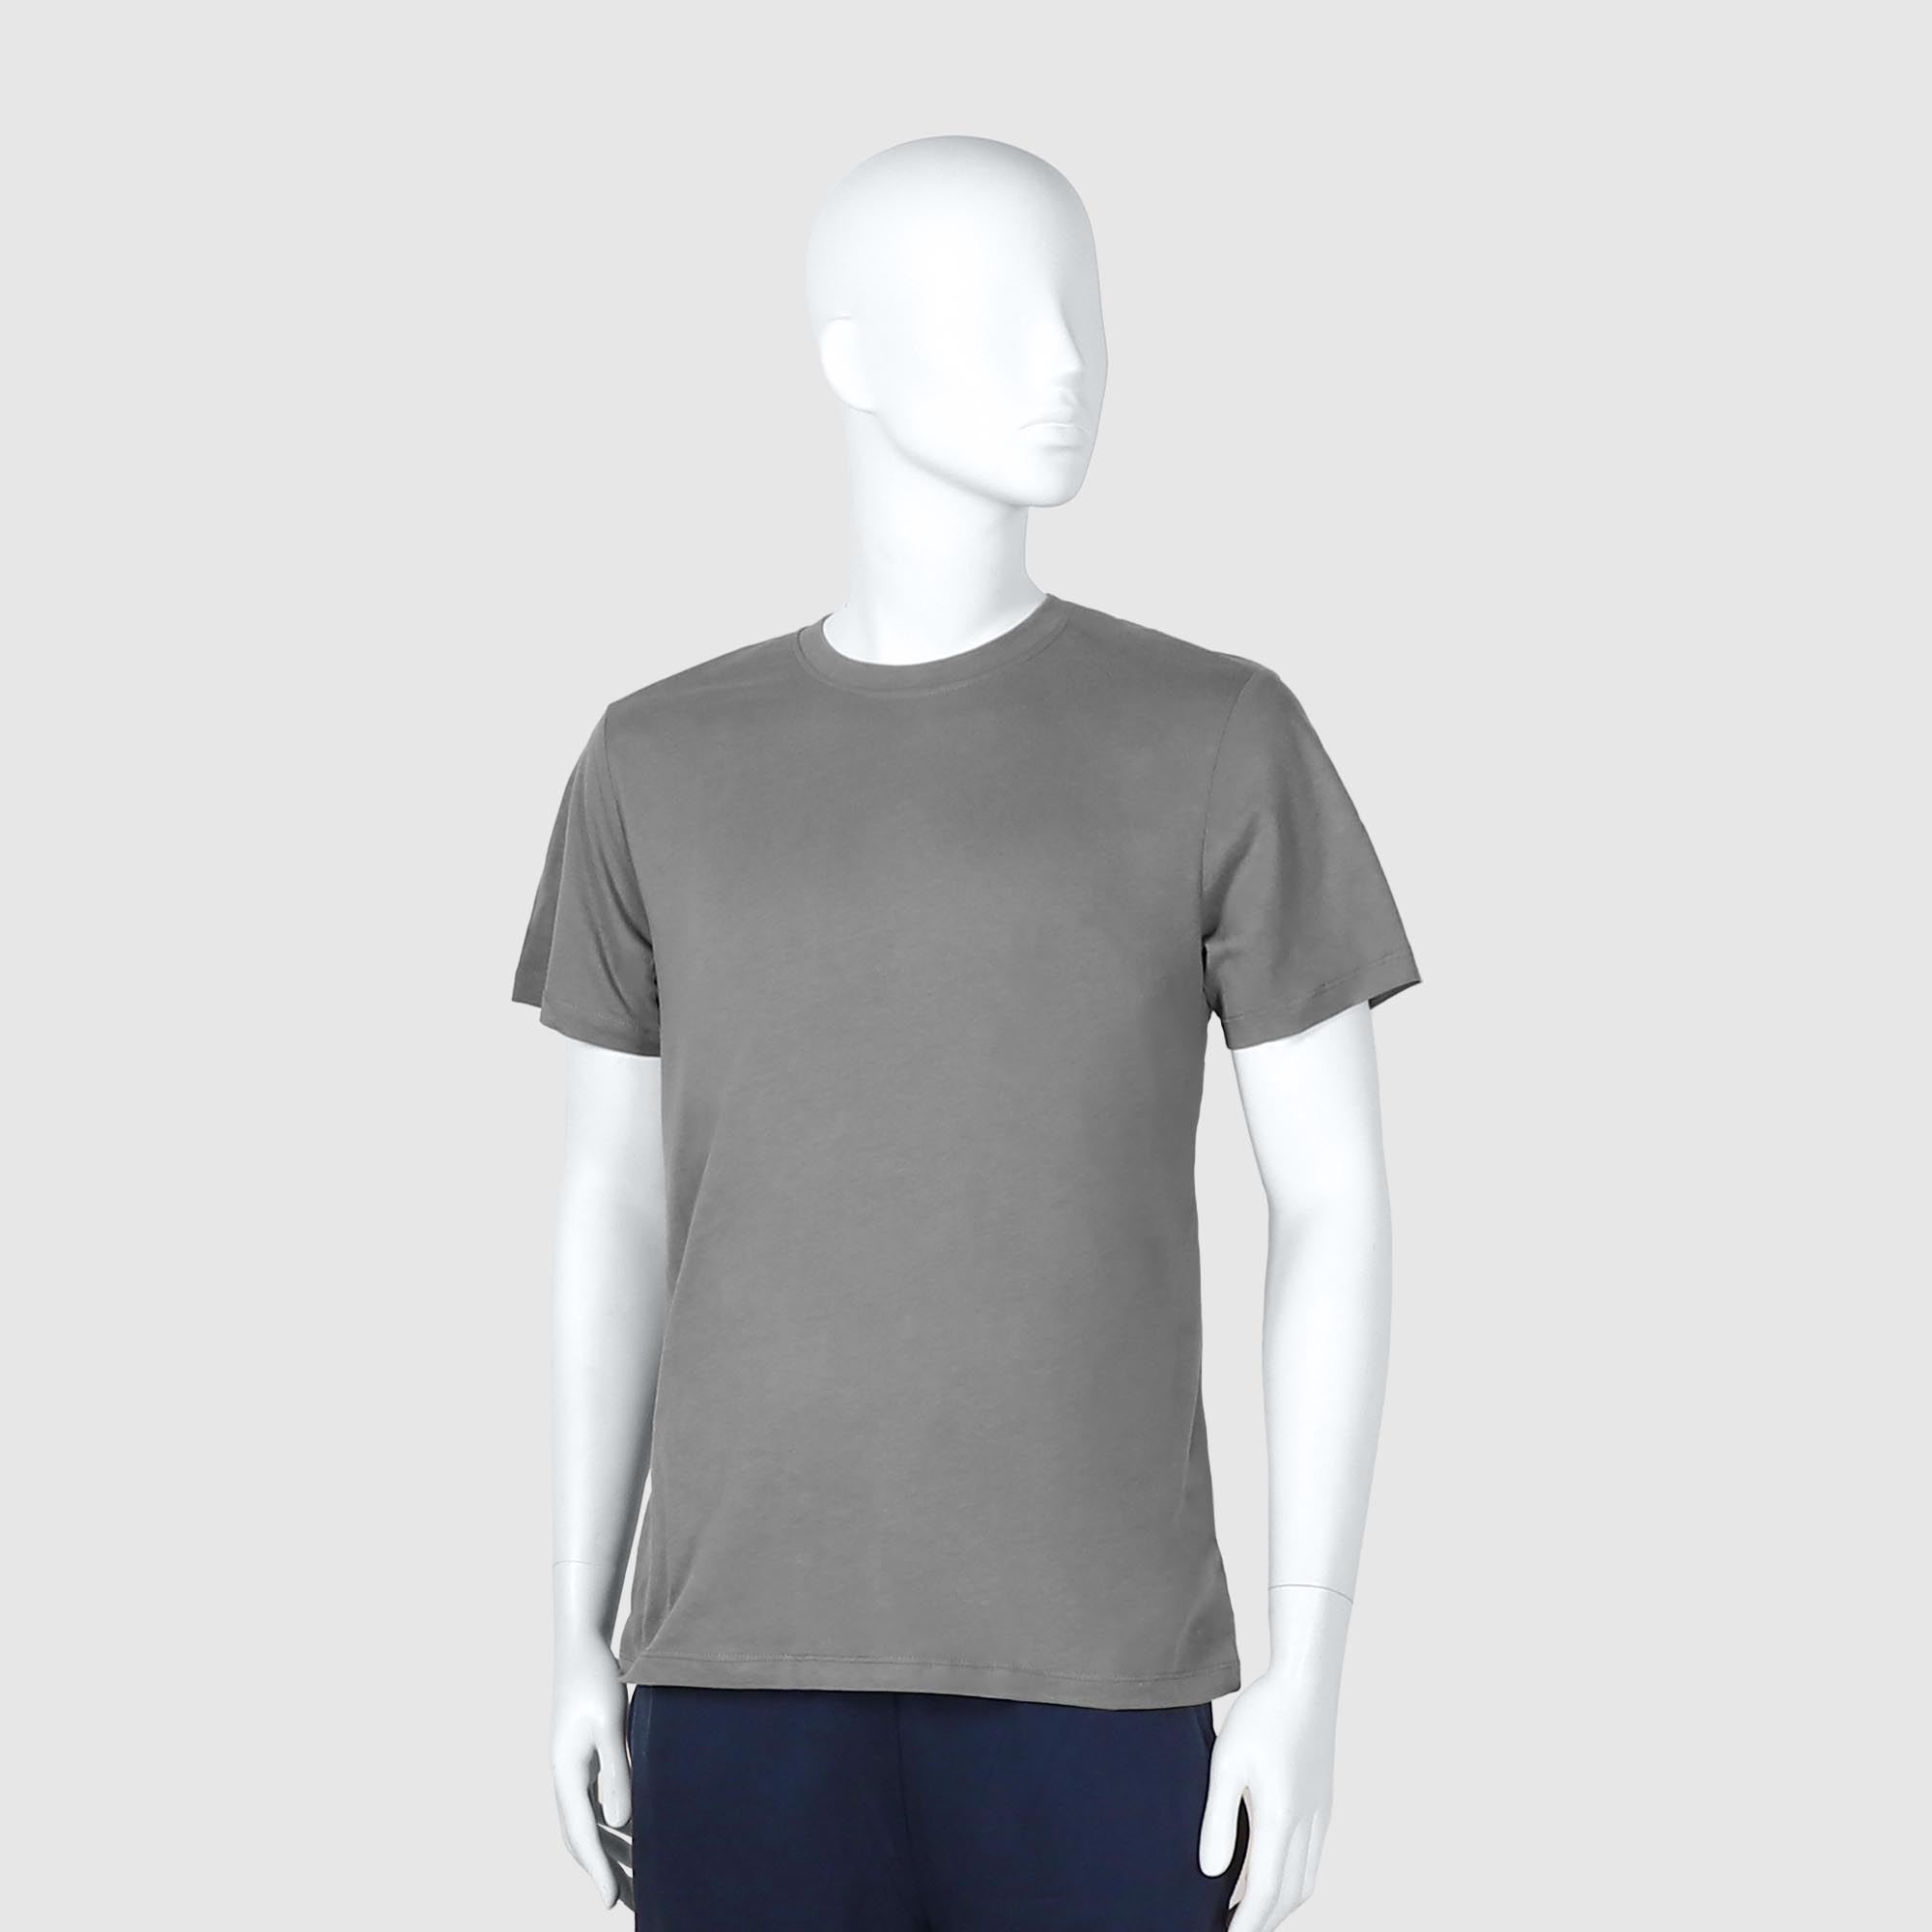 Мужская футболка Diva Teks серая (DTD-04), цвет серый, размер 48-50